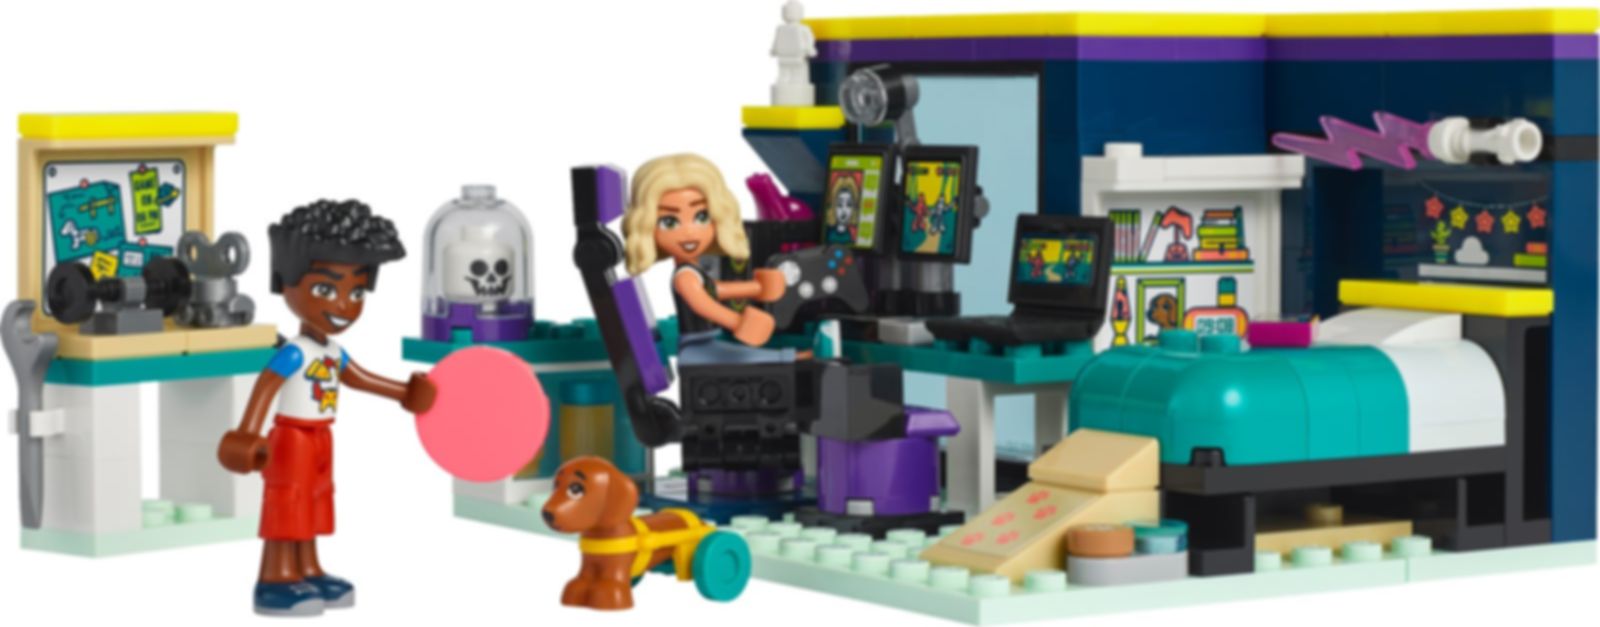 LEGO® Friends Nova's Room components